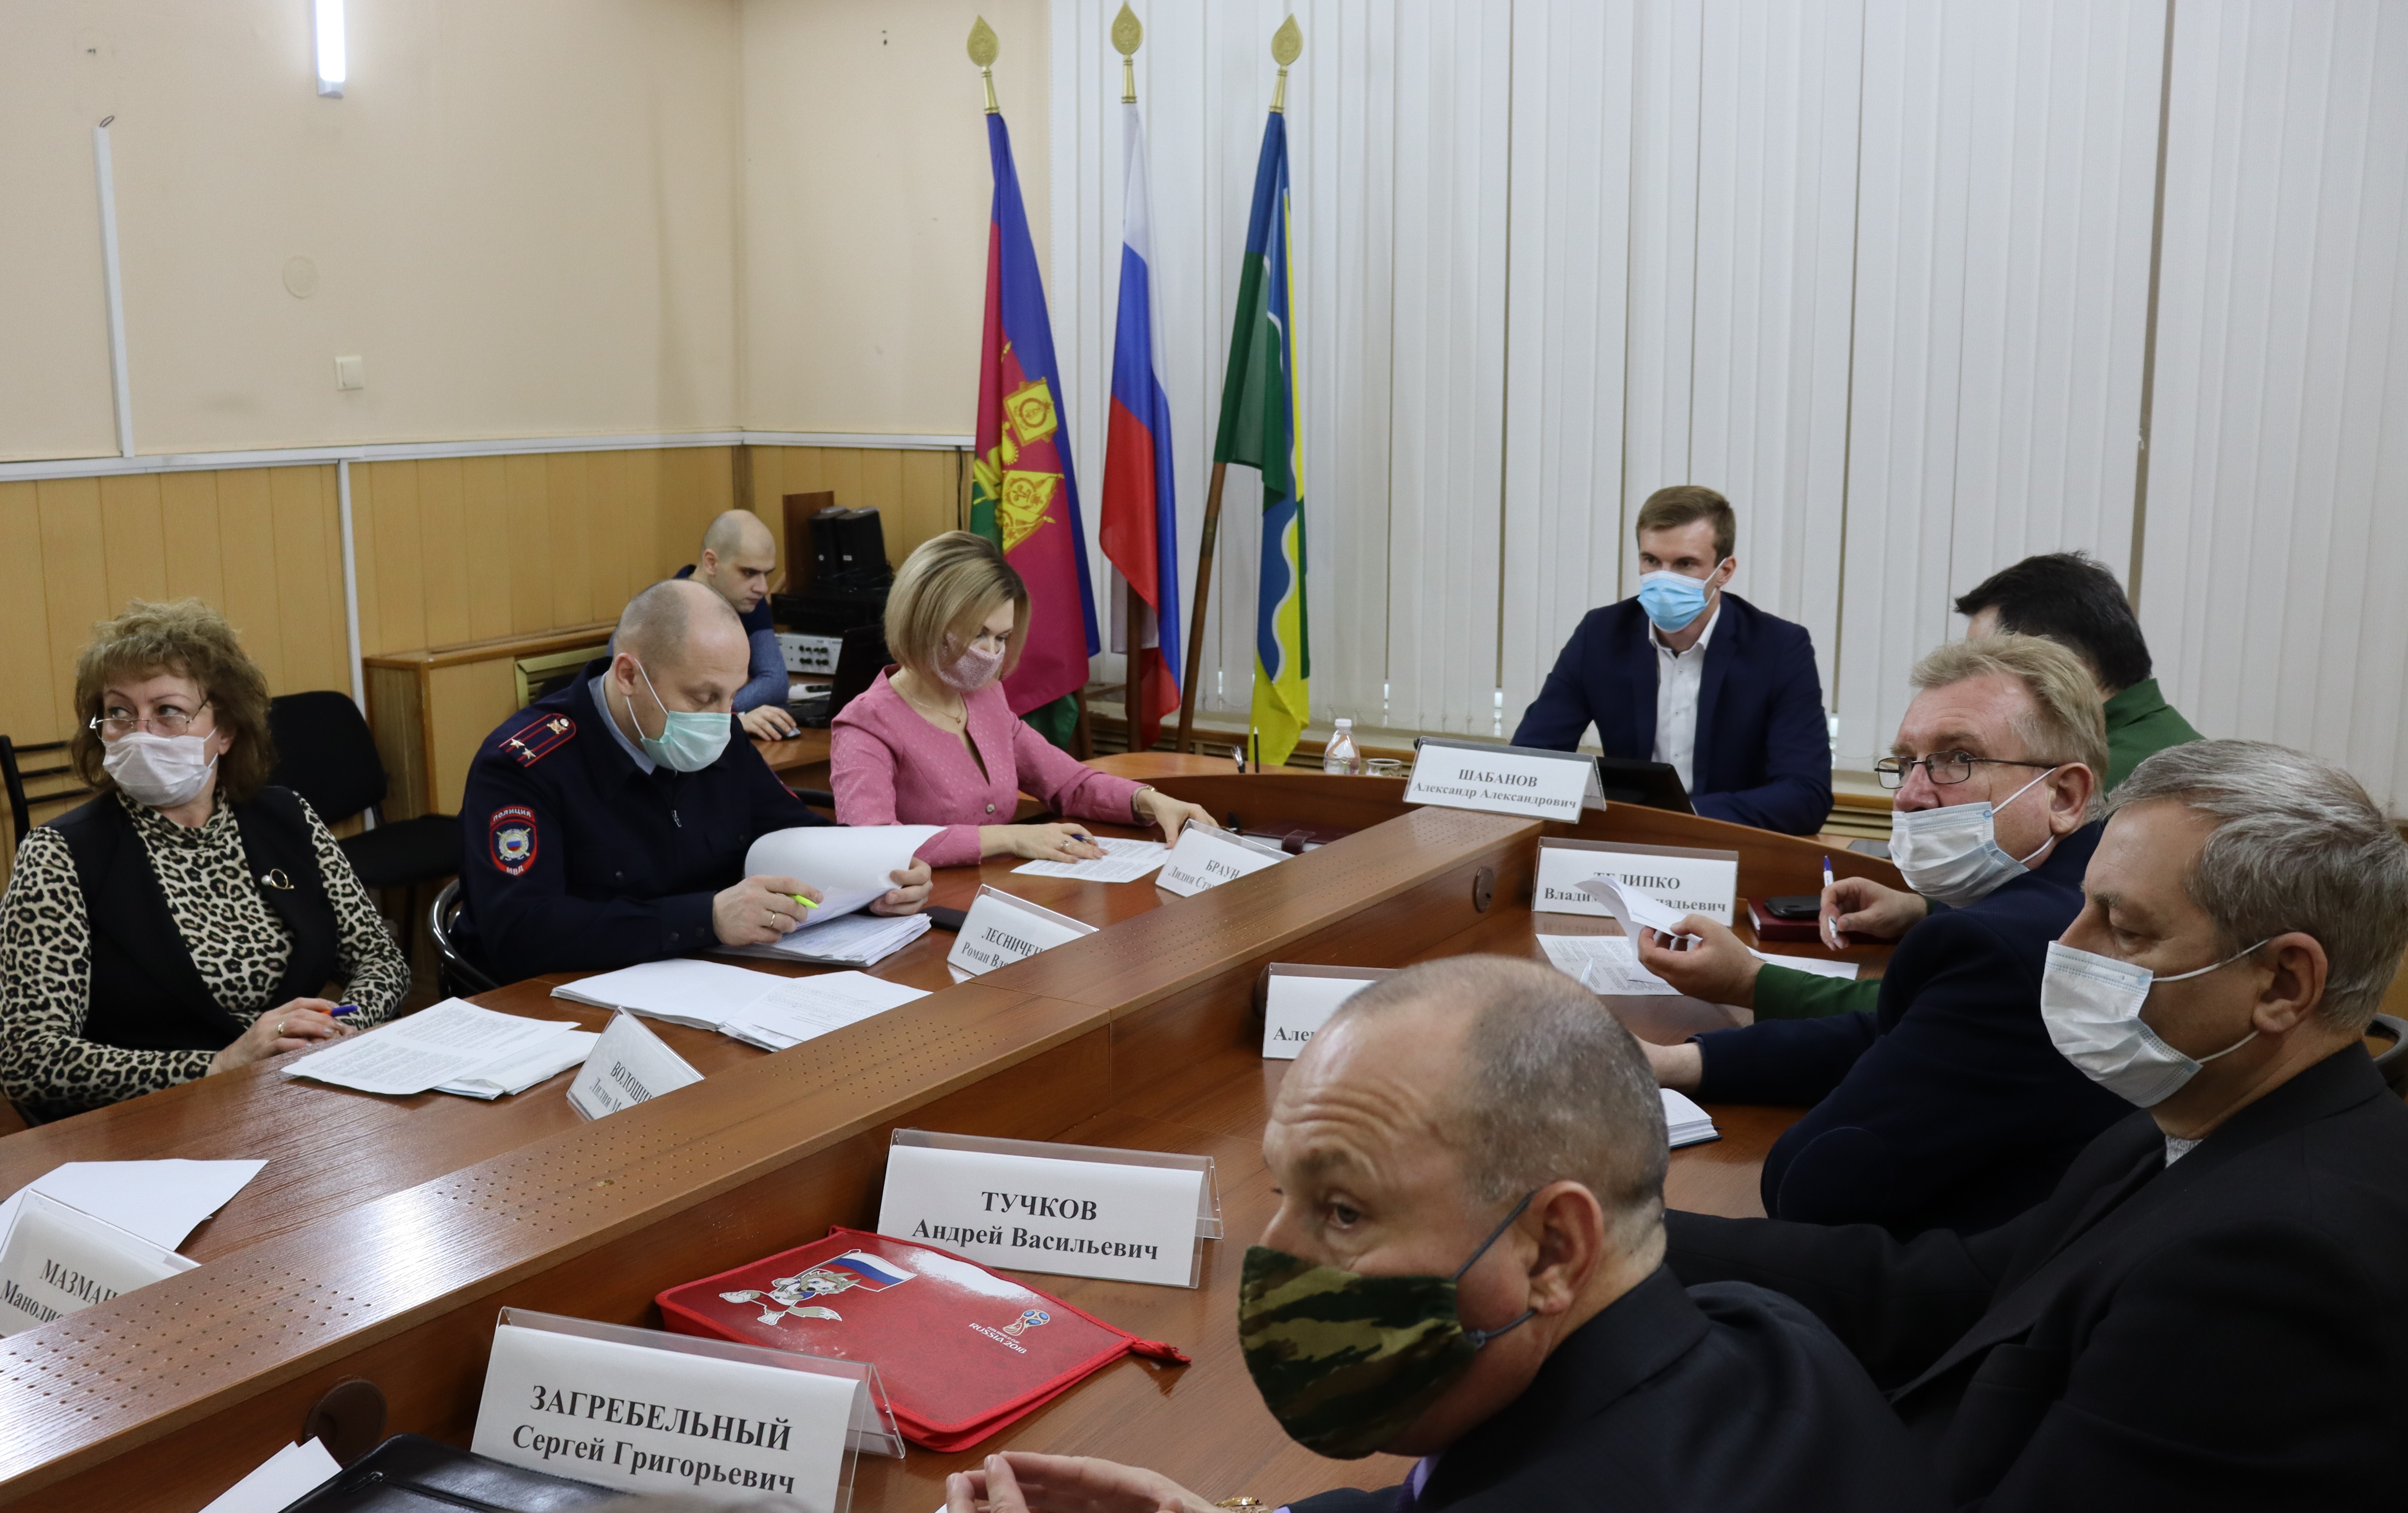 Итоги осеннего призыва 2020 года граждан на военную службу в Краснодарском крае этого года сегодня обсудили на краевом совещании